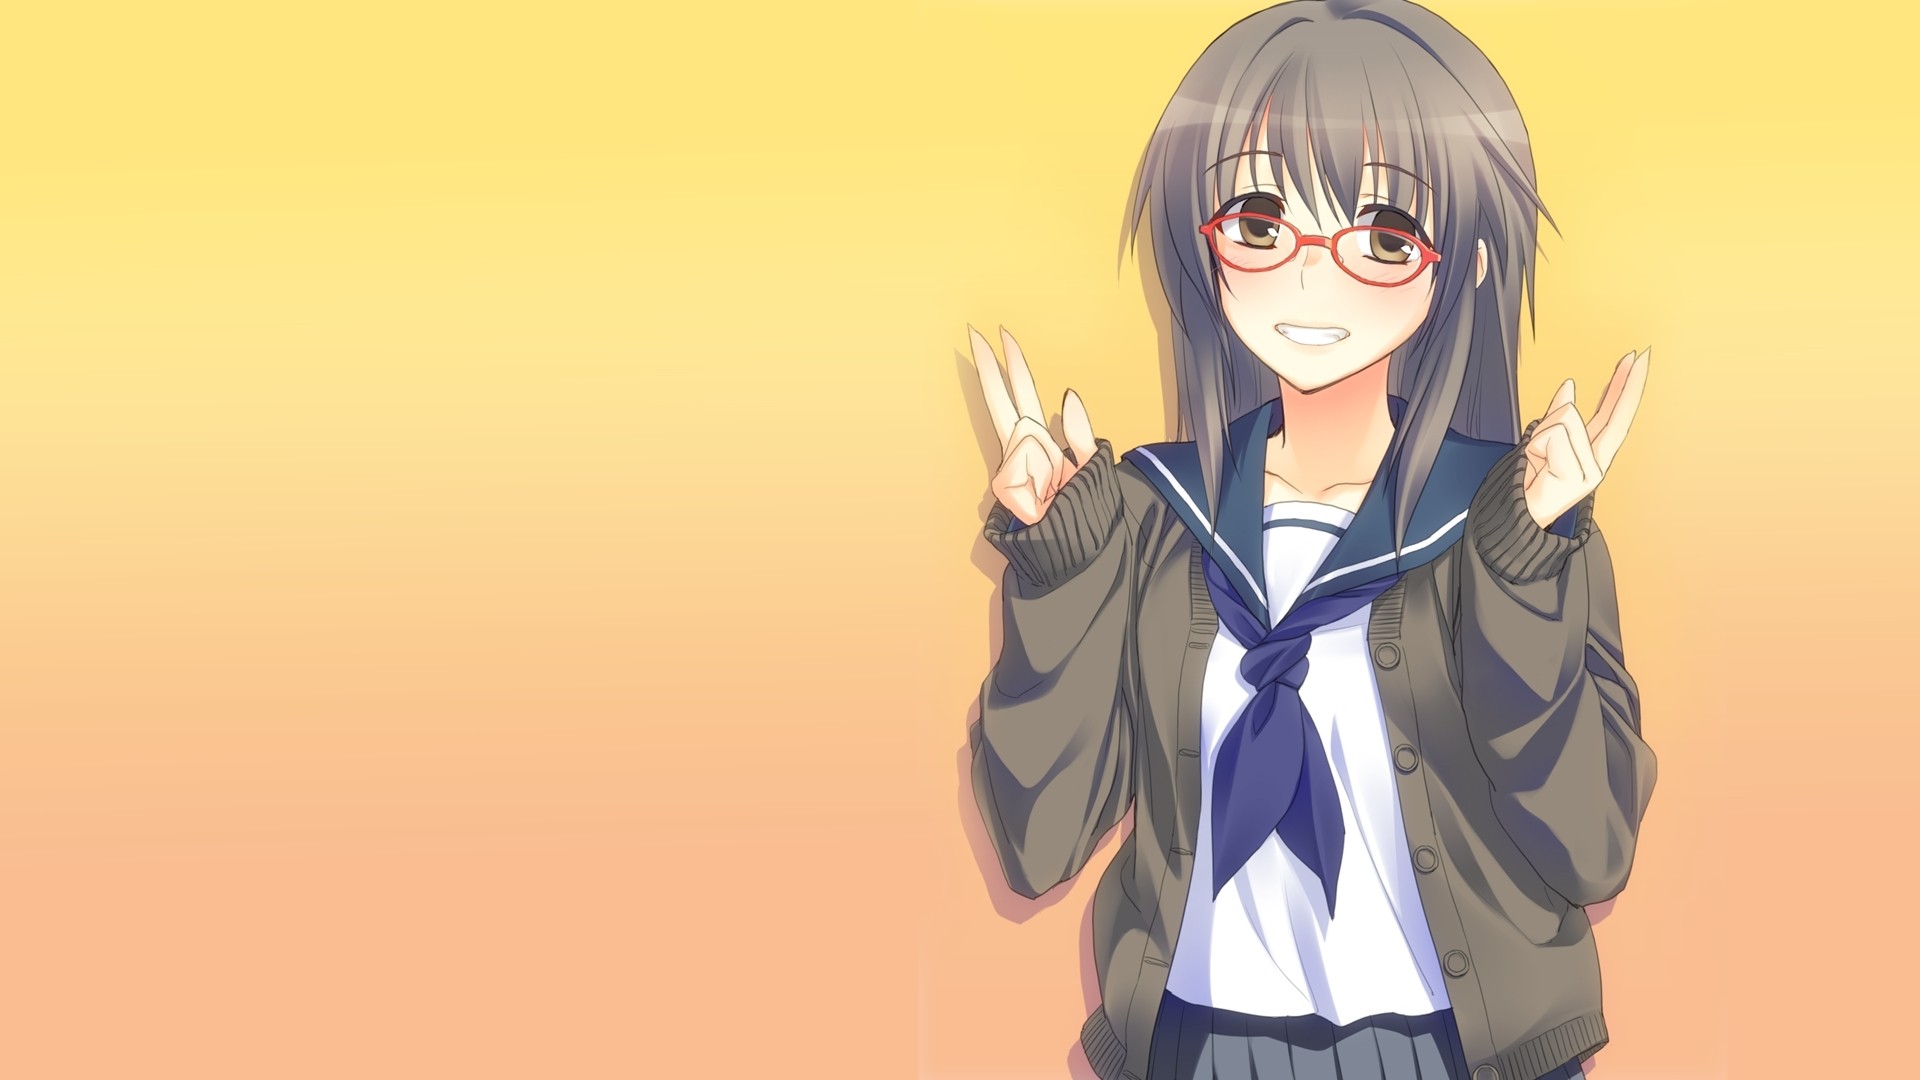 Anime Girl With Glasses Desktop Wallpaper